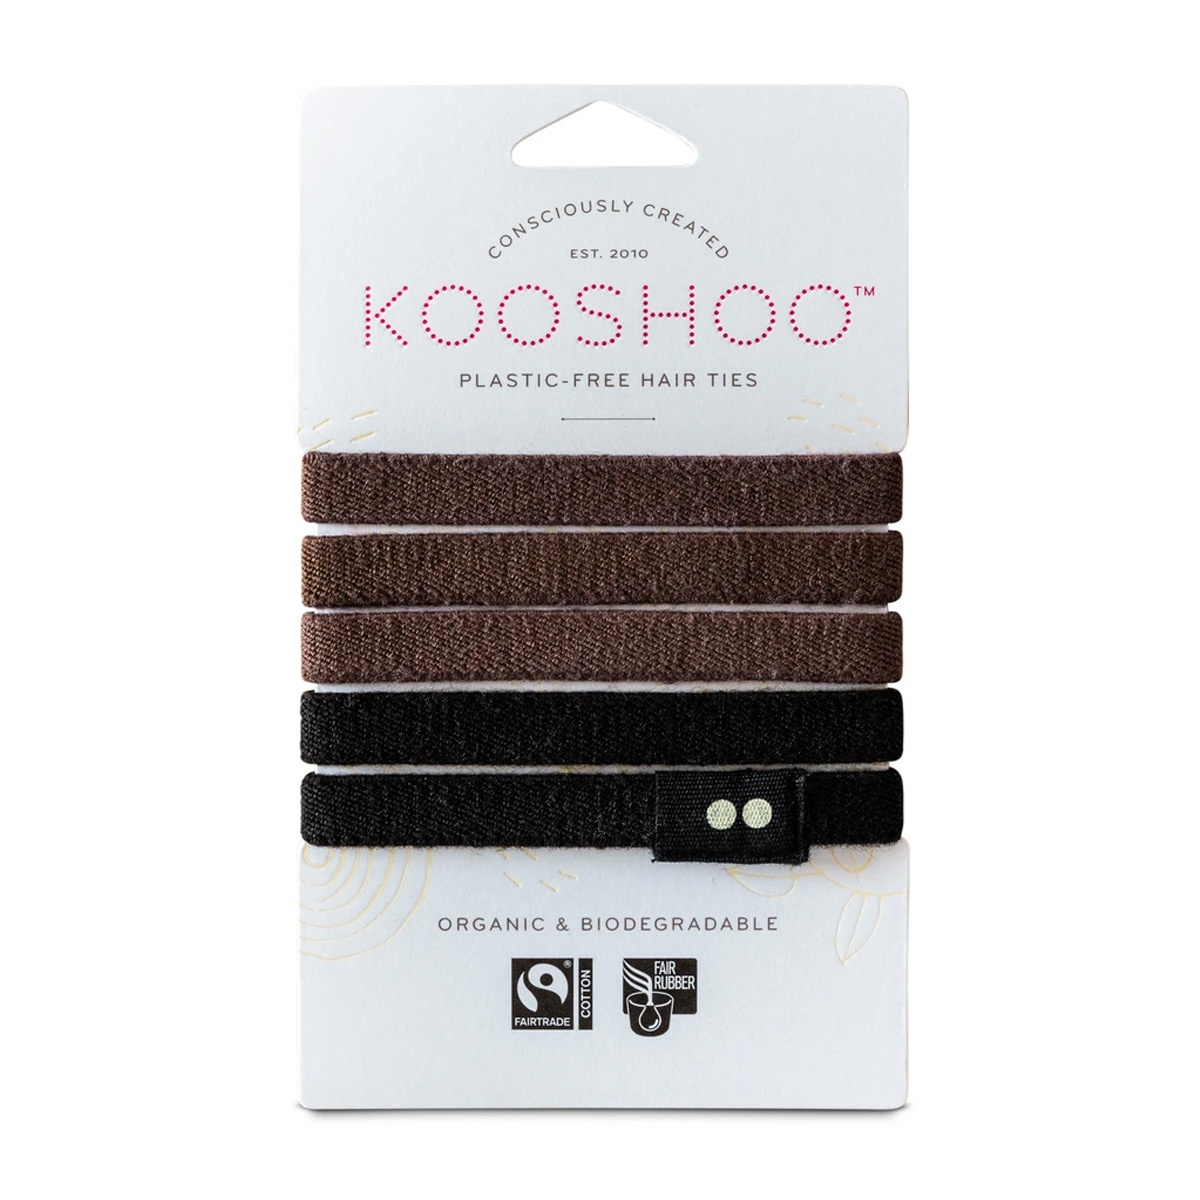 Kooshoo Brown/Black Organic Plastic-free Hair Ties - 5 Pack